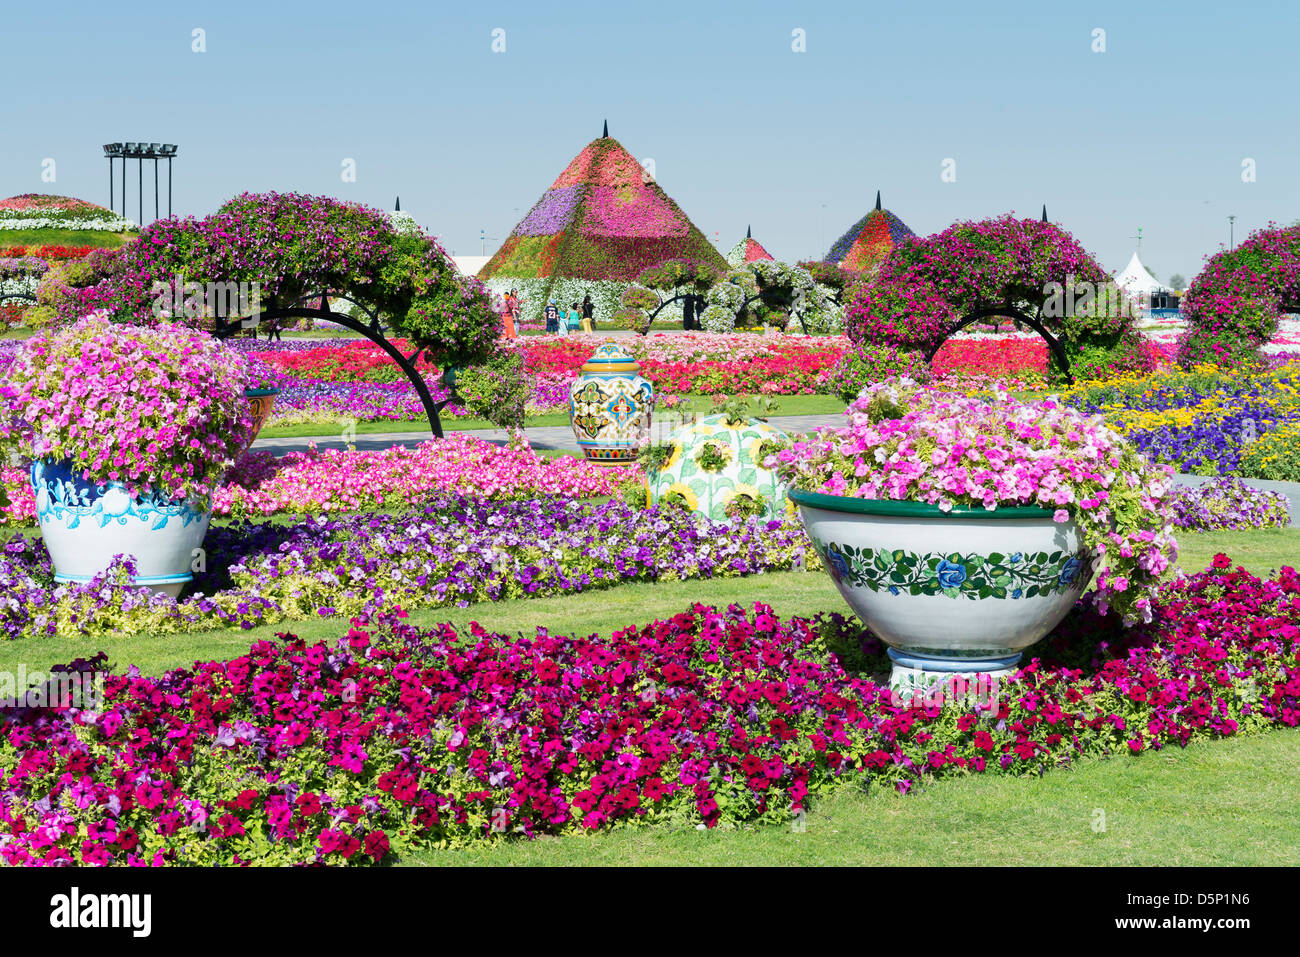 Jardín milagro en Dubai, inaugurado en marzo de 2013 y se proclamó jardín de flores más grande del mundo; Emiratos Arabes Unidos Foto de stock